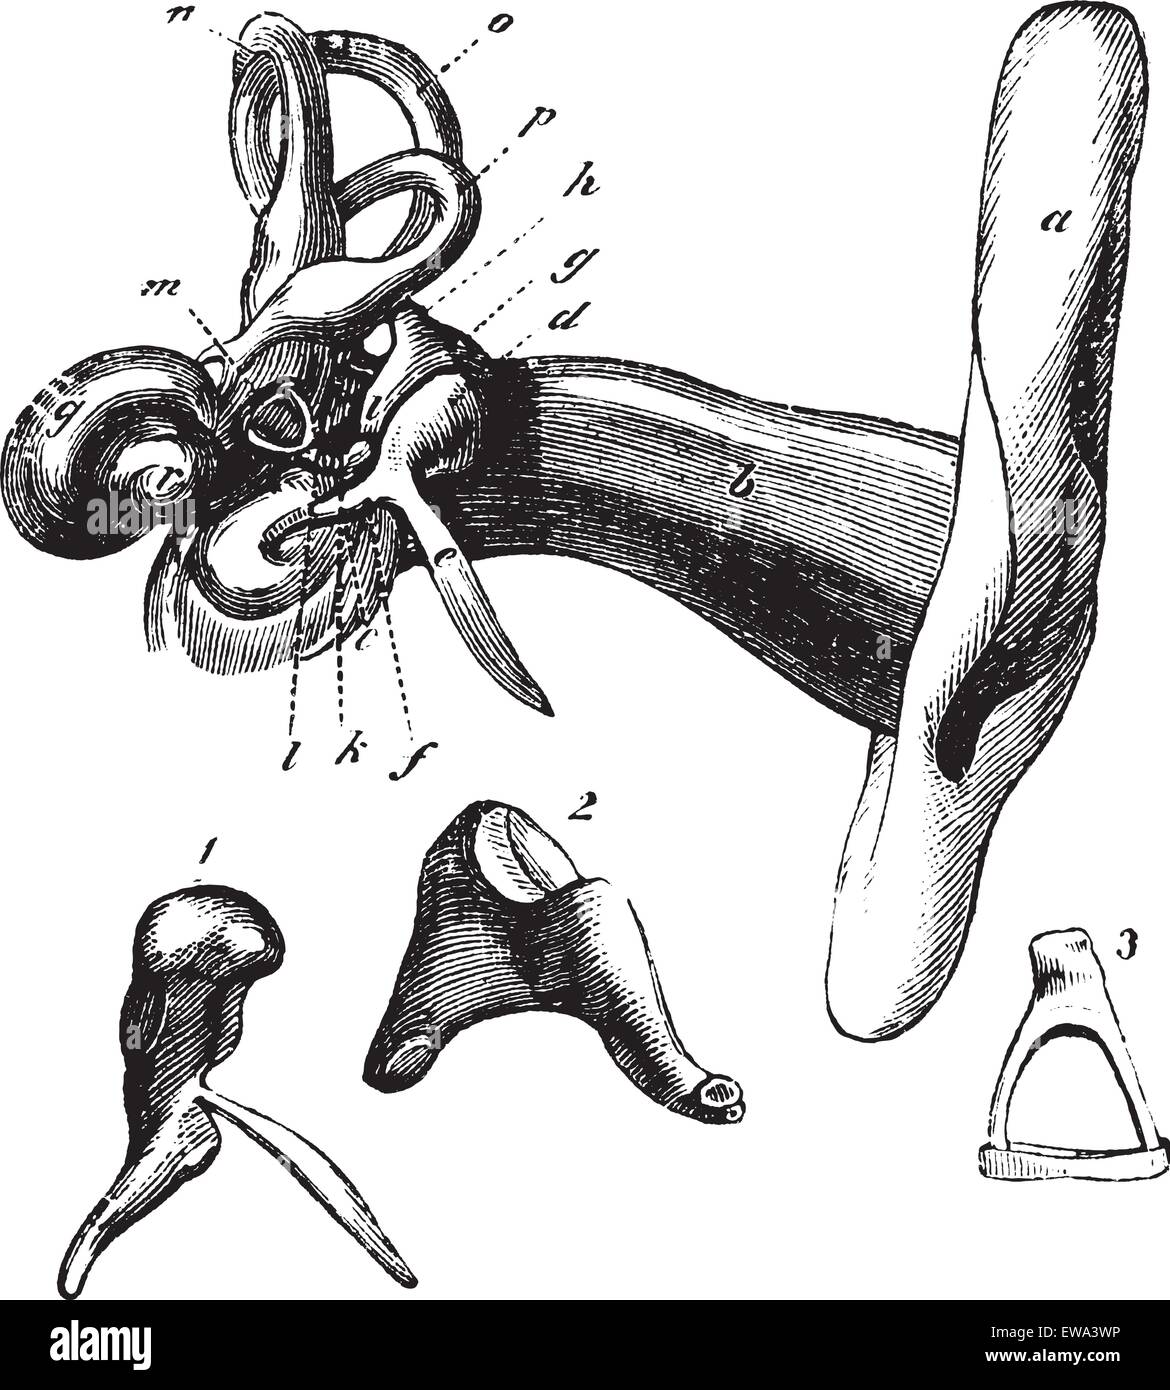 Orecchio umano anatomia o parti della protesi. - Un, orecchio esterno, b, canal c, membrana timpanica; d, la testa del martello; e processo di osso martello, f, martello maniglia; g, incudine (incus), h, i, processo breve e processo lungo dell'incudine; k, l articolazione di Illustrazione Vettoriale